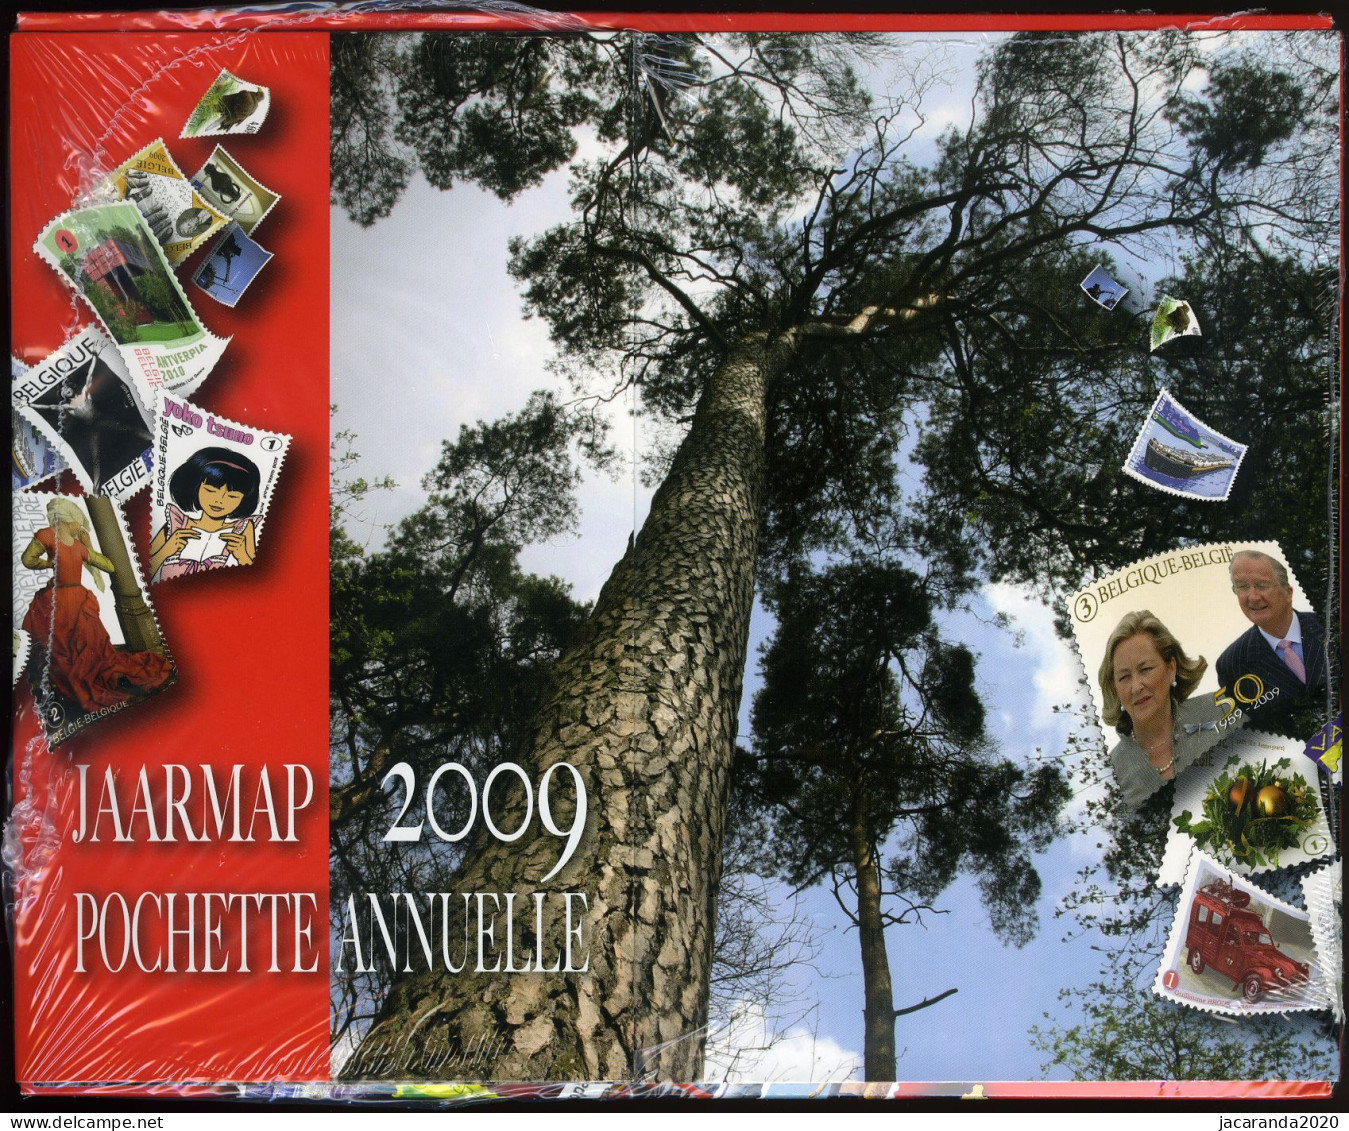 België 2009 - Jaarmap - Pochette Annuelle - Met Zwart-wit Velletje Van Europa - Originele Verpakking - Scellé - Sealed - Años Completos